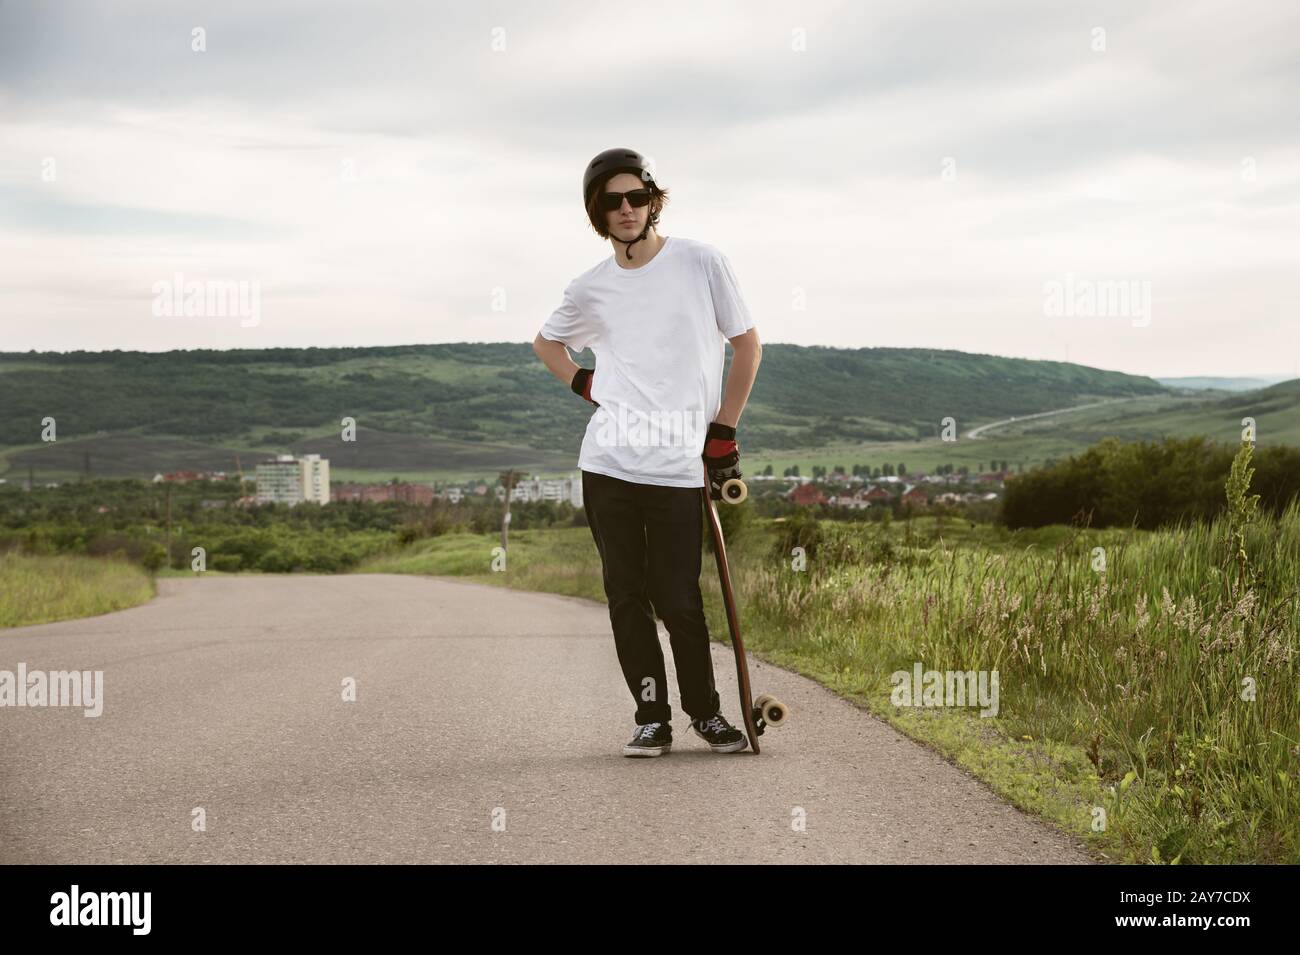 Ein junger Kerl - ein Skater, der in Erwartung eines Rennens auf einer Landstraße steht Stockfoto